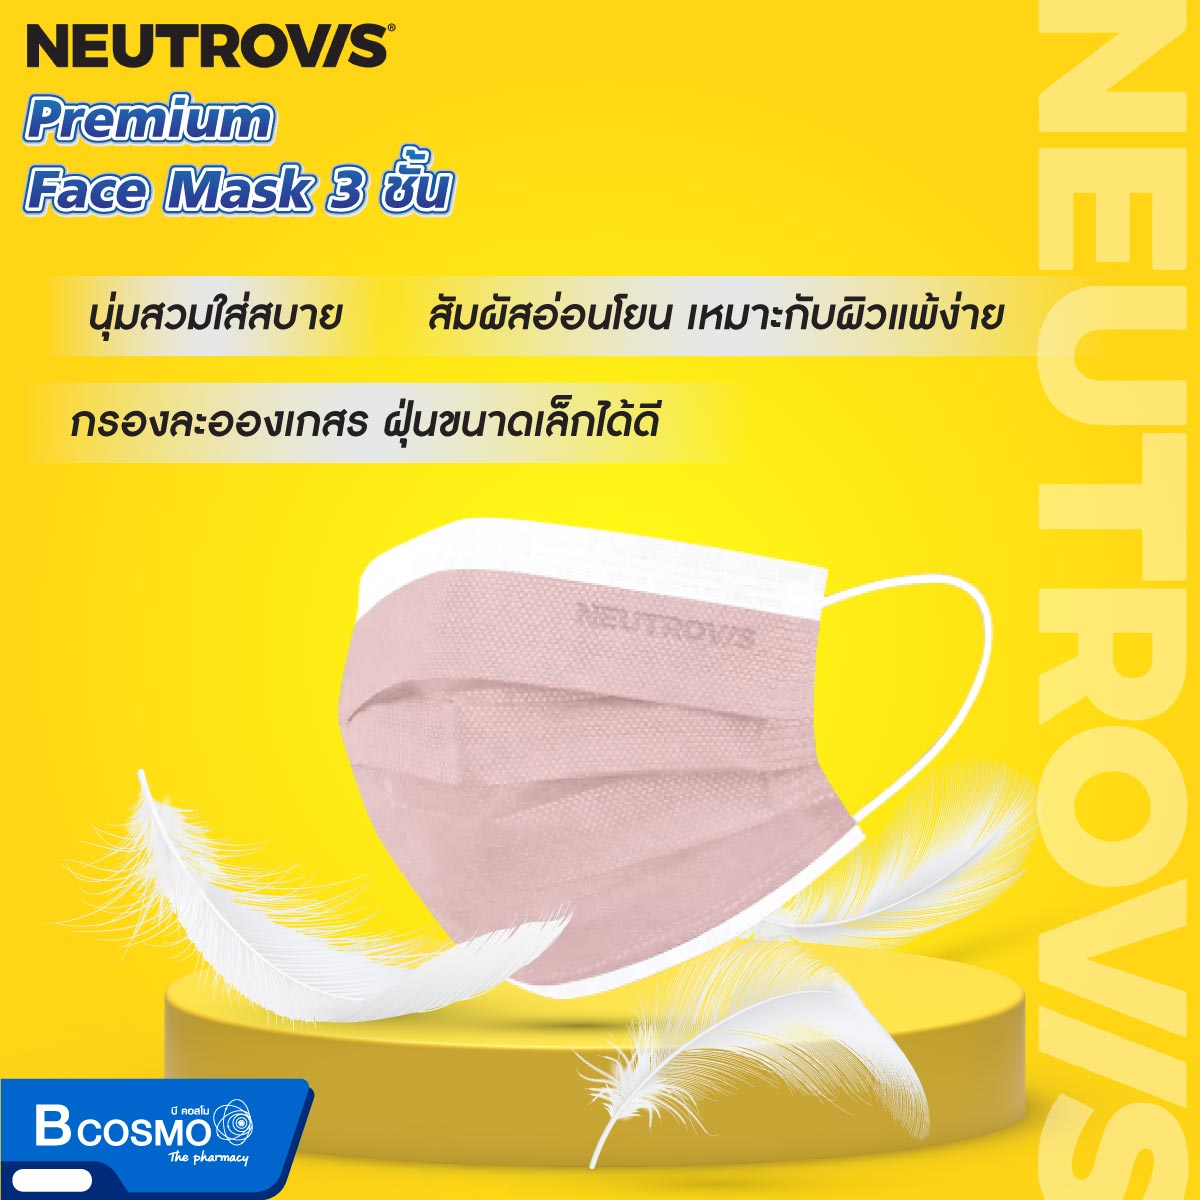 หน้ากากอนามัย Neutrovis Premium สำหรับเด็ก 3 ชั้น [30 ชิ้น]